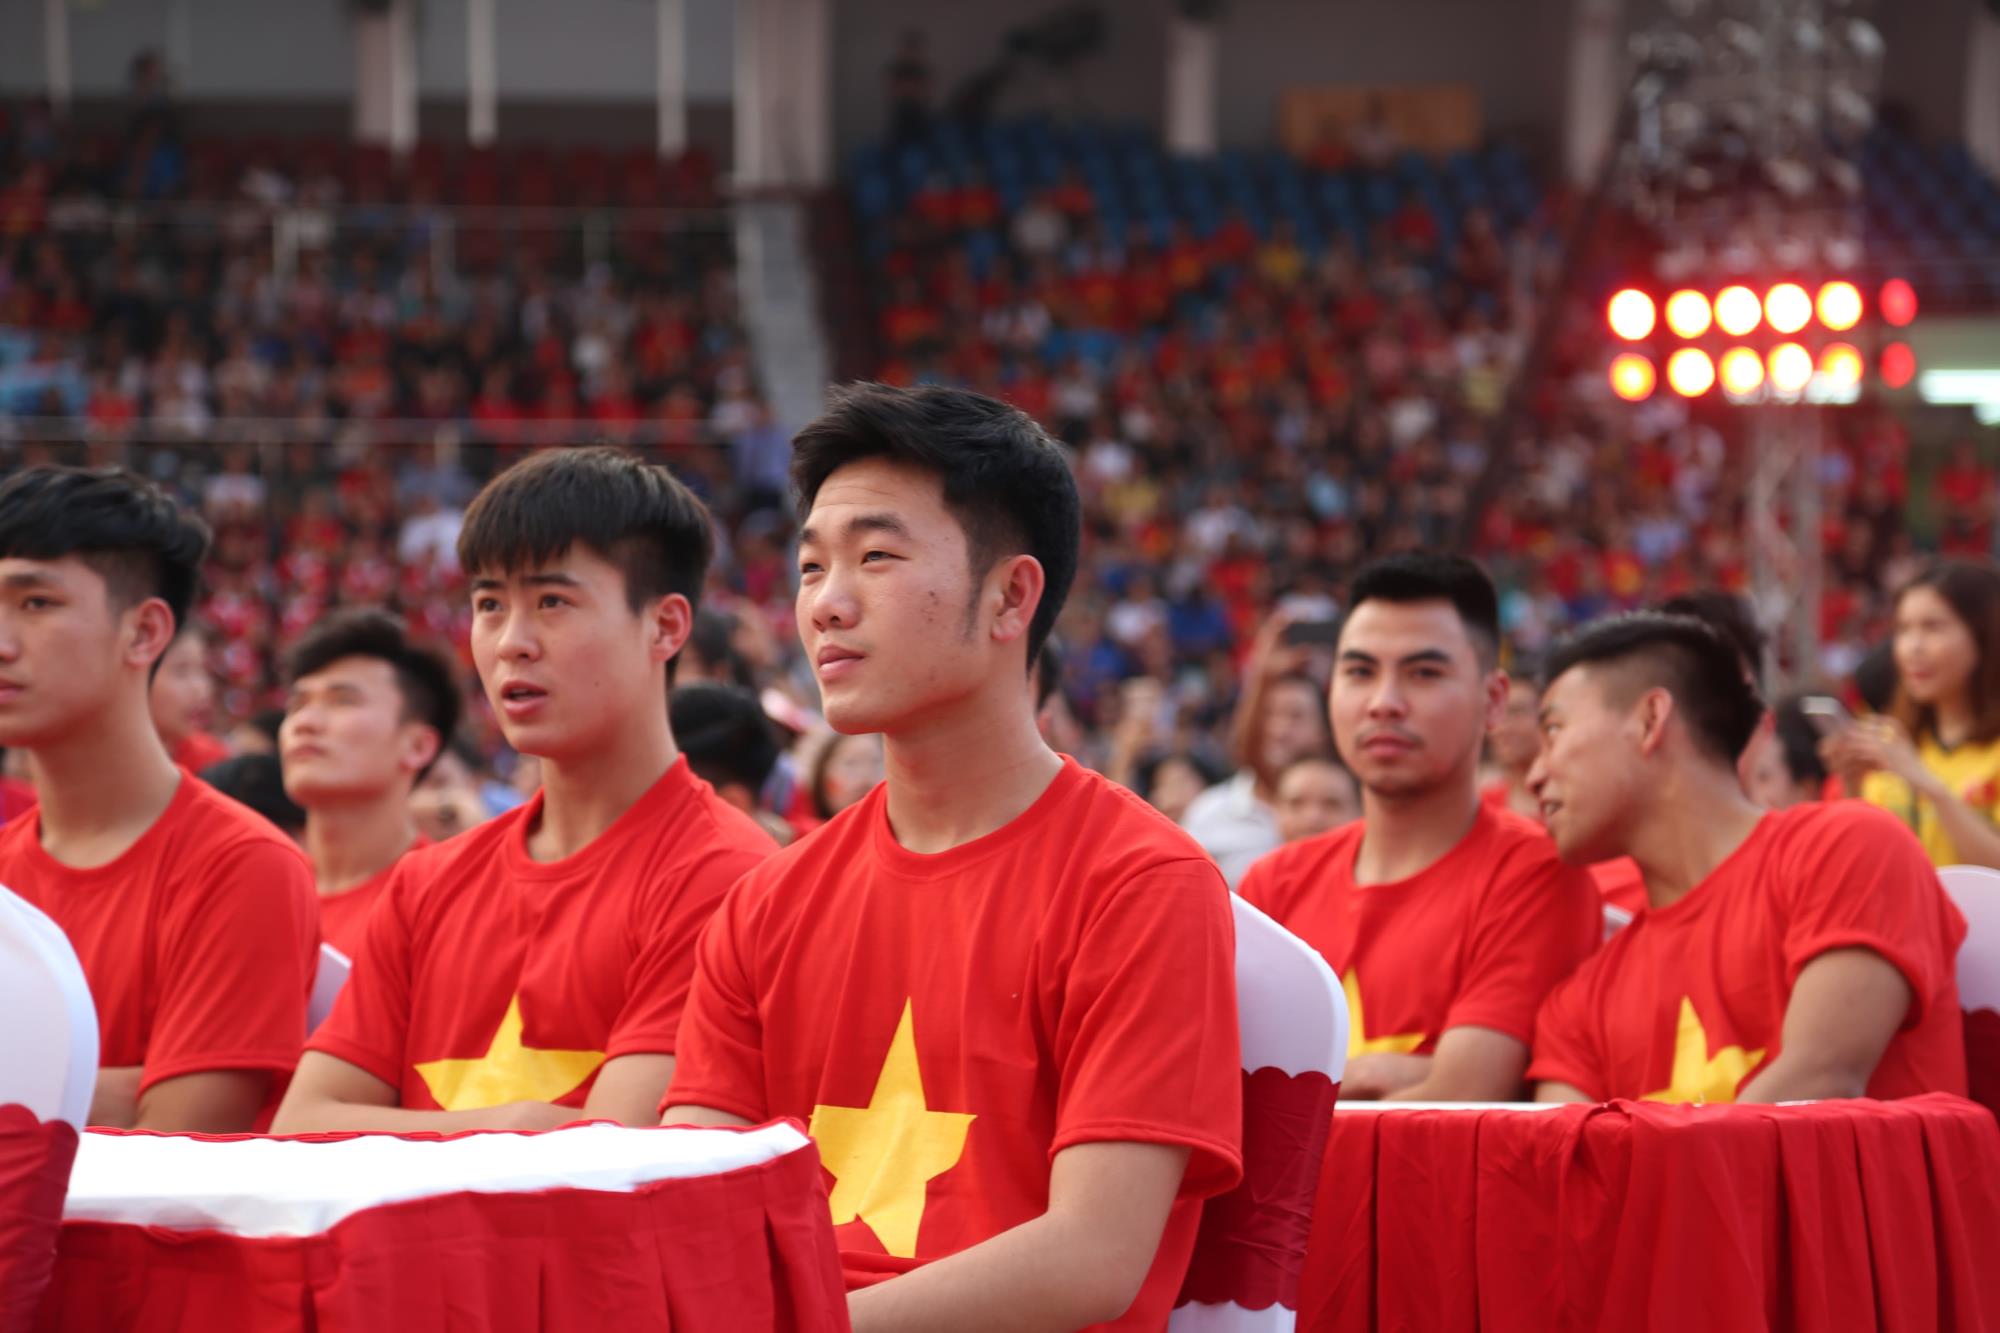 Cận cảnh nhan sắc như 'nam thần' của các cầu thủ U23 Việt Nam trong buổi giao lưu với fan hâm mộ - Ảnh 9